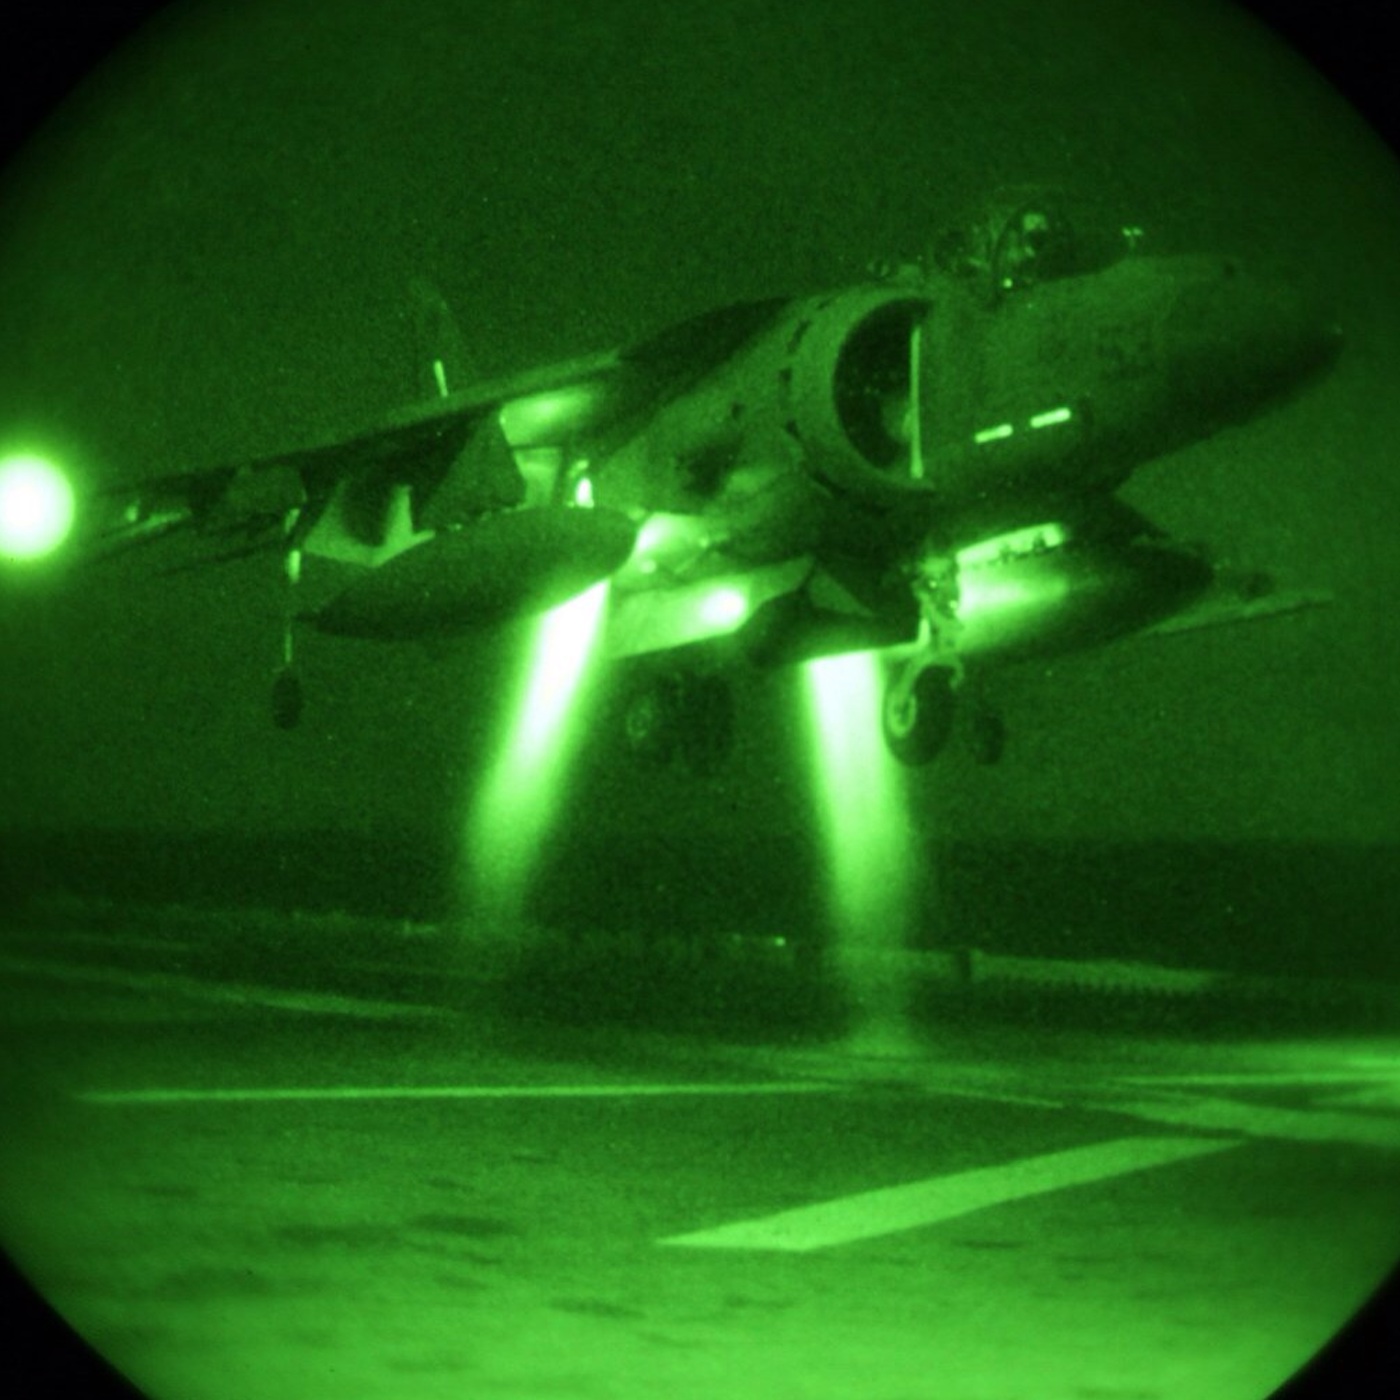 AV-8 landing at night